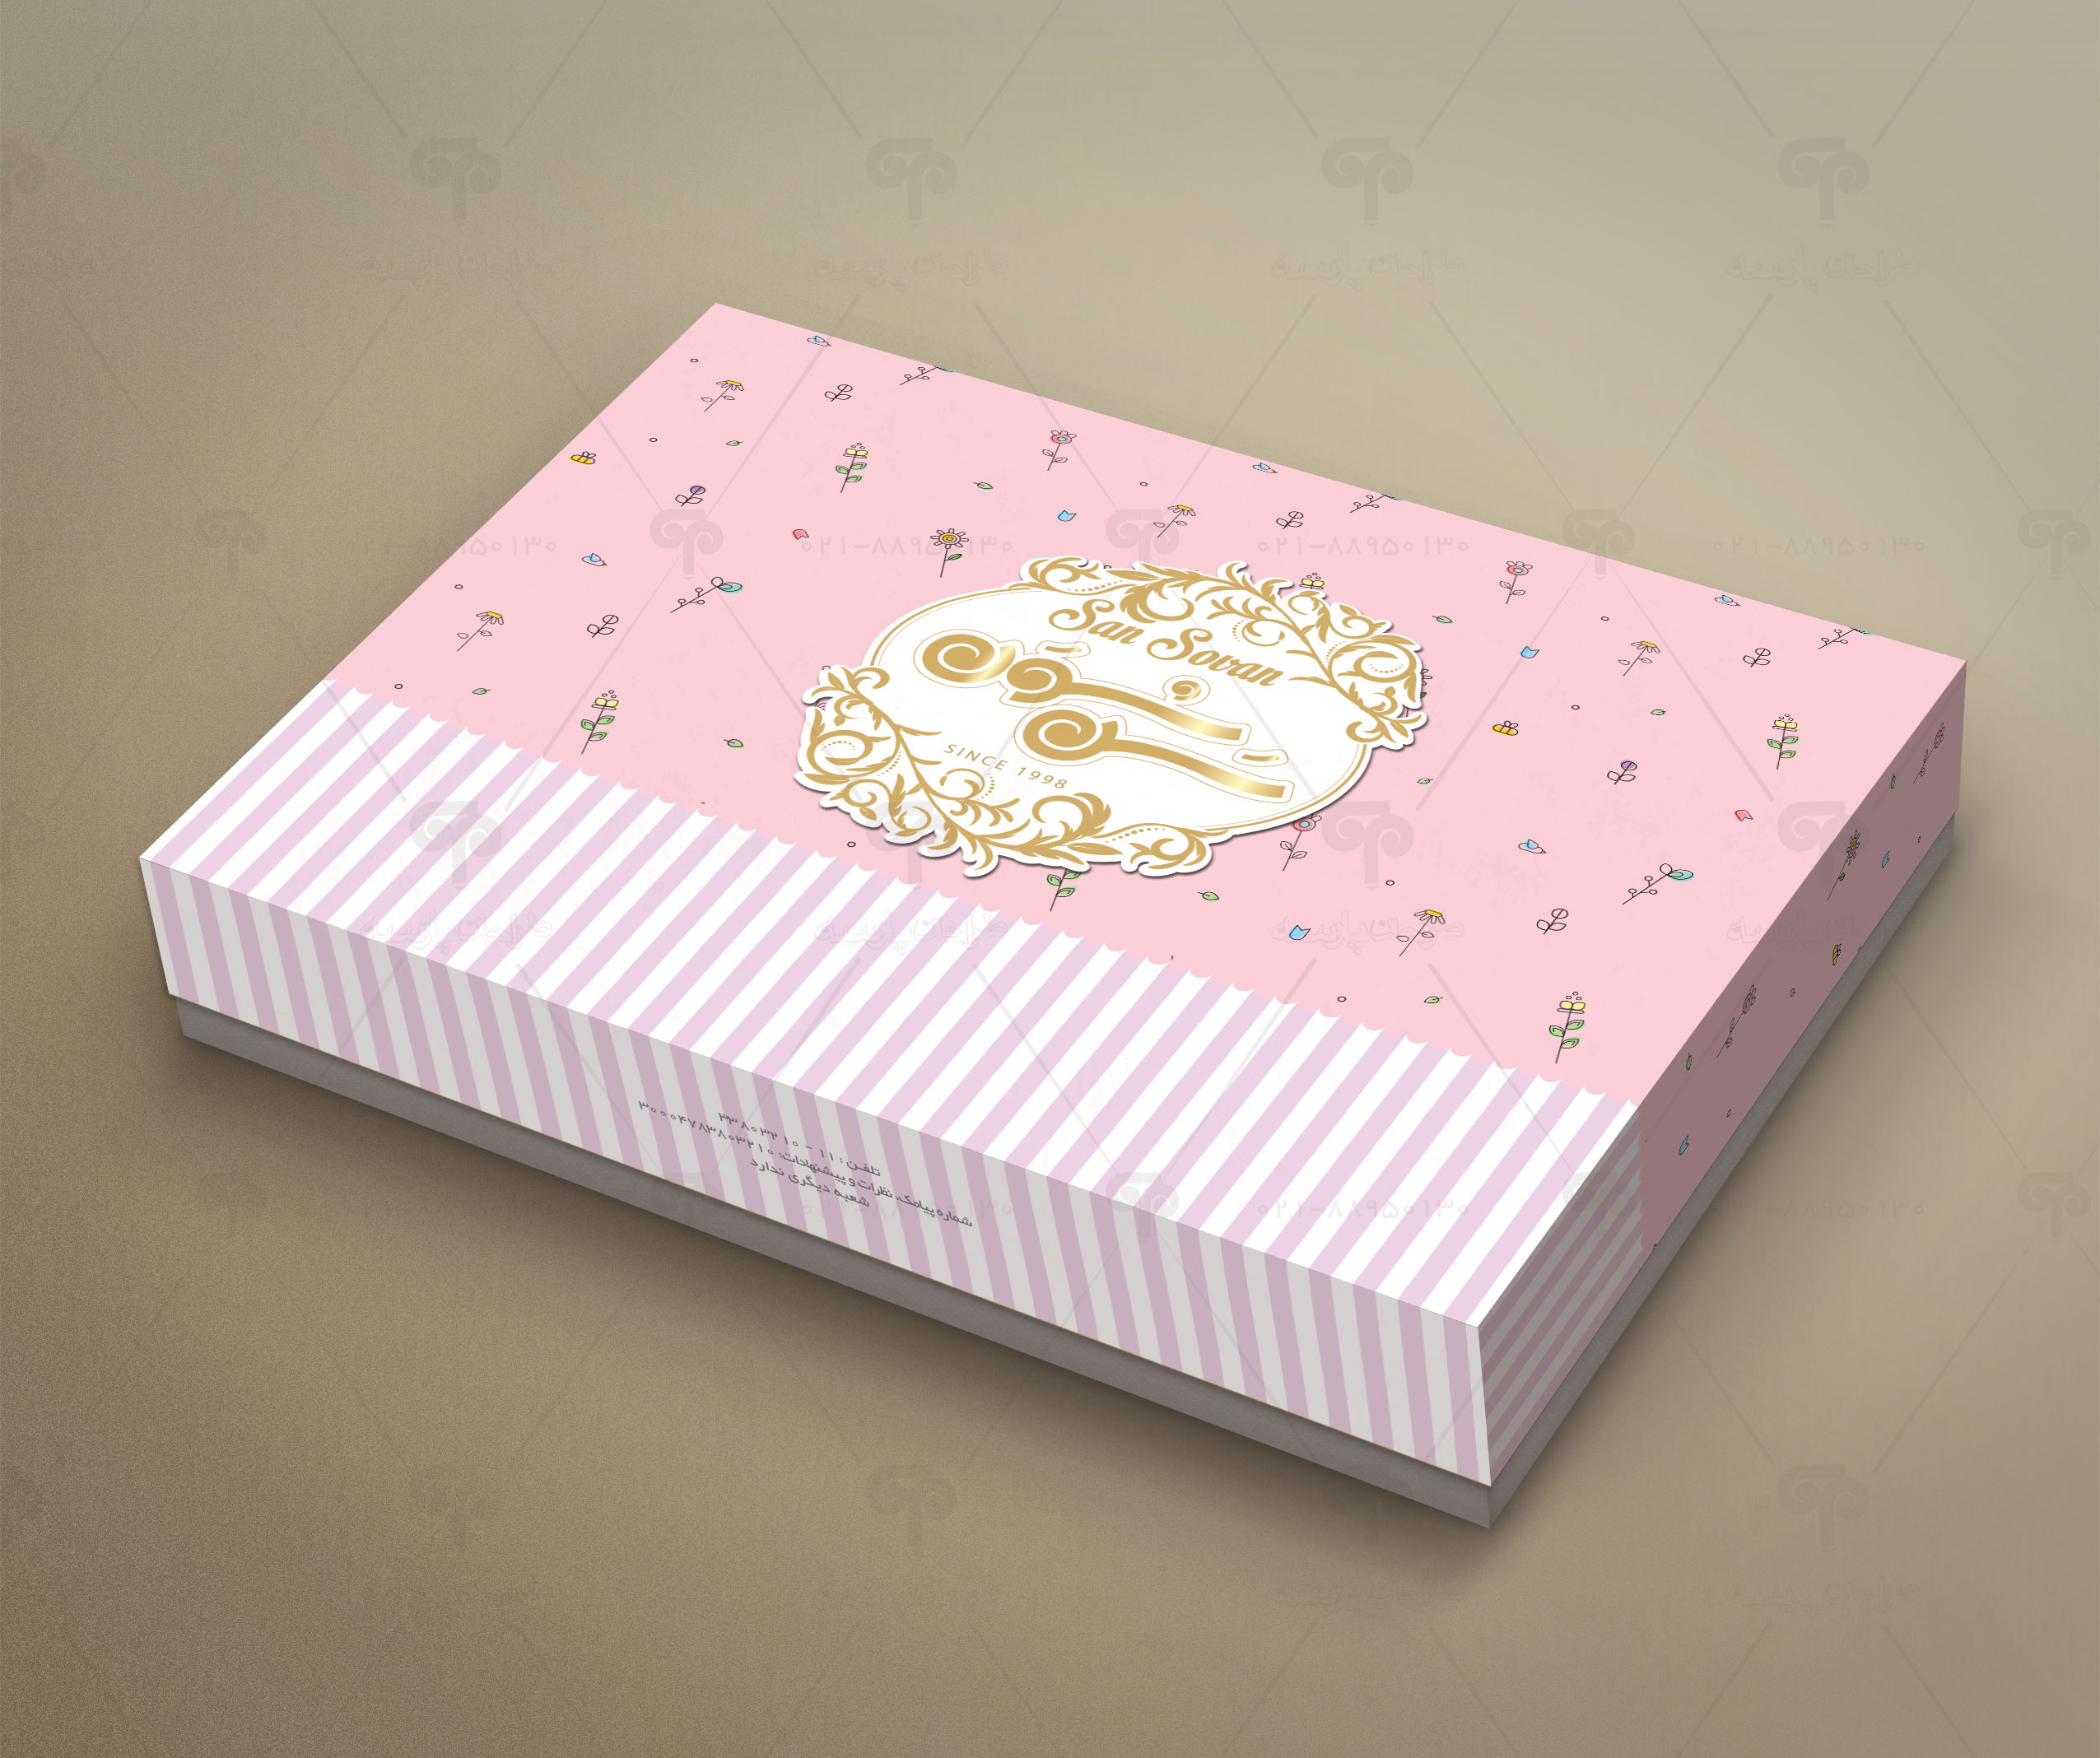 طراحی جعبه شیرینی سن سون